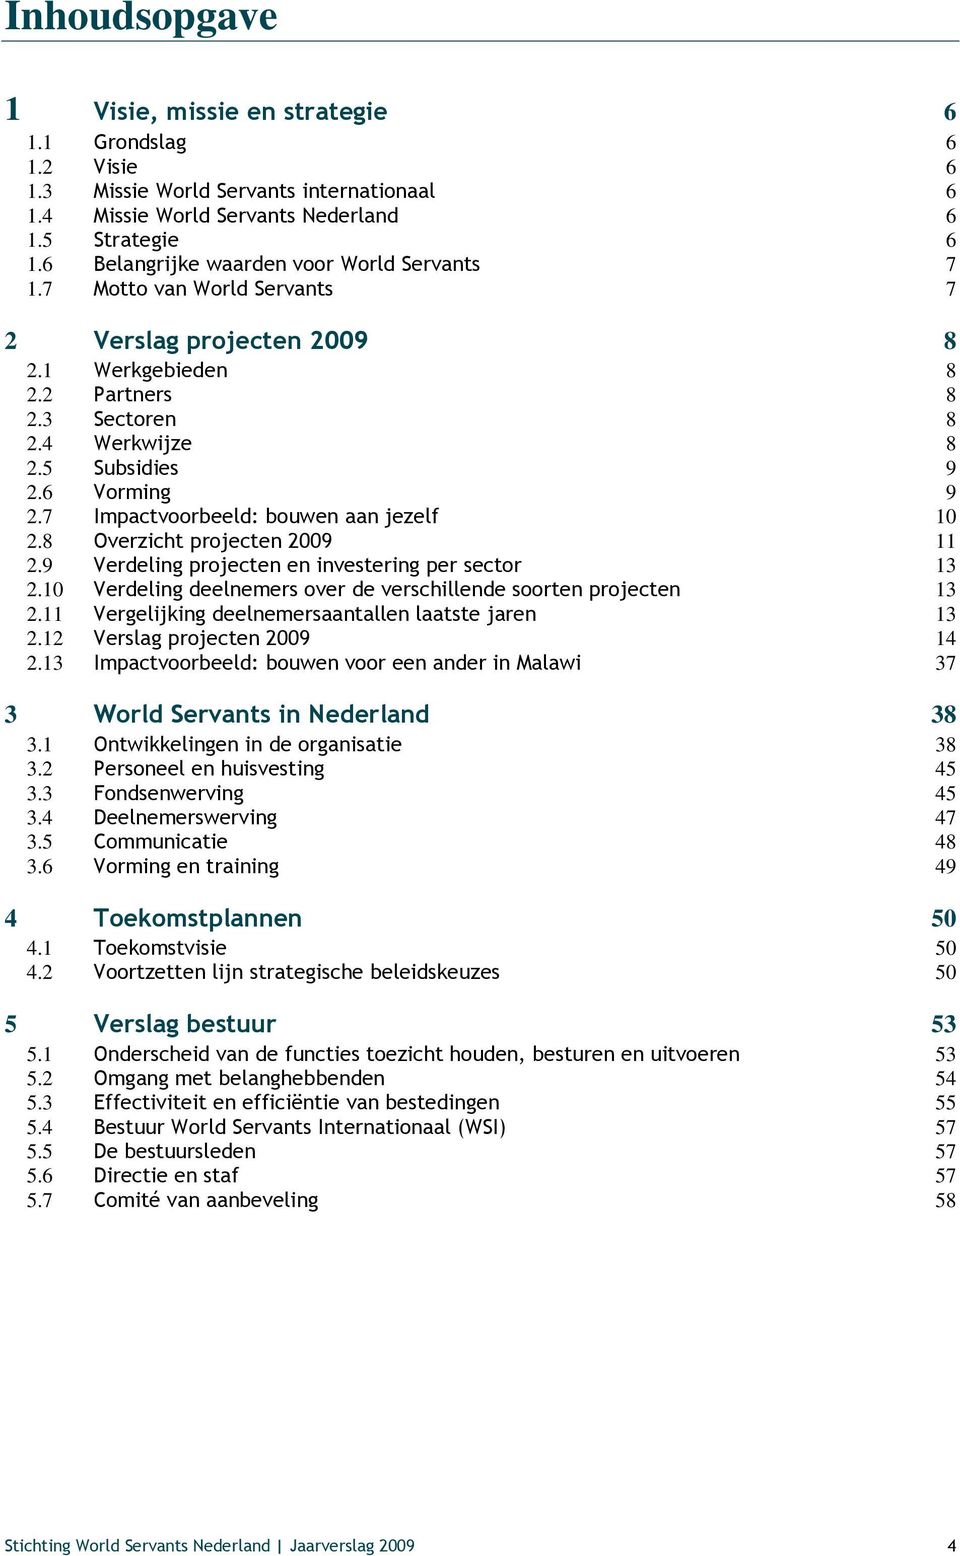 7 Impactvoorbeeld: bouwen aan jezelf 10 2.8 Overzicht projecten 2009 11 2.9 Verdeling projecten en investering per sector 13 2.10 Verdeling deelnemers over de verschillende soorten projecten 13 2.